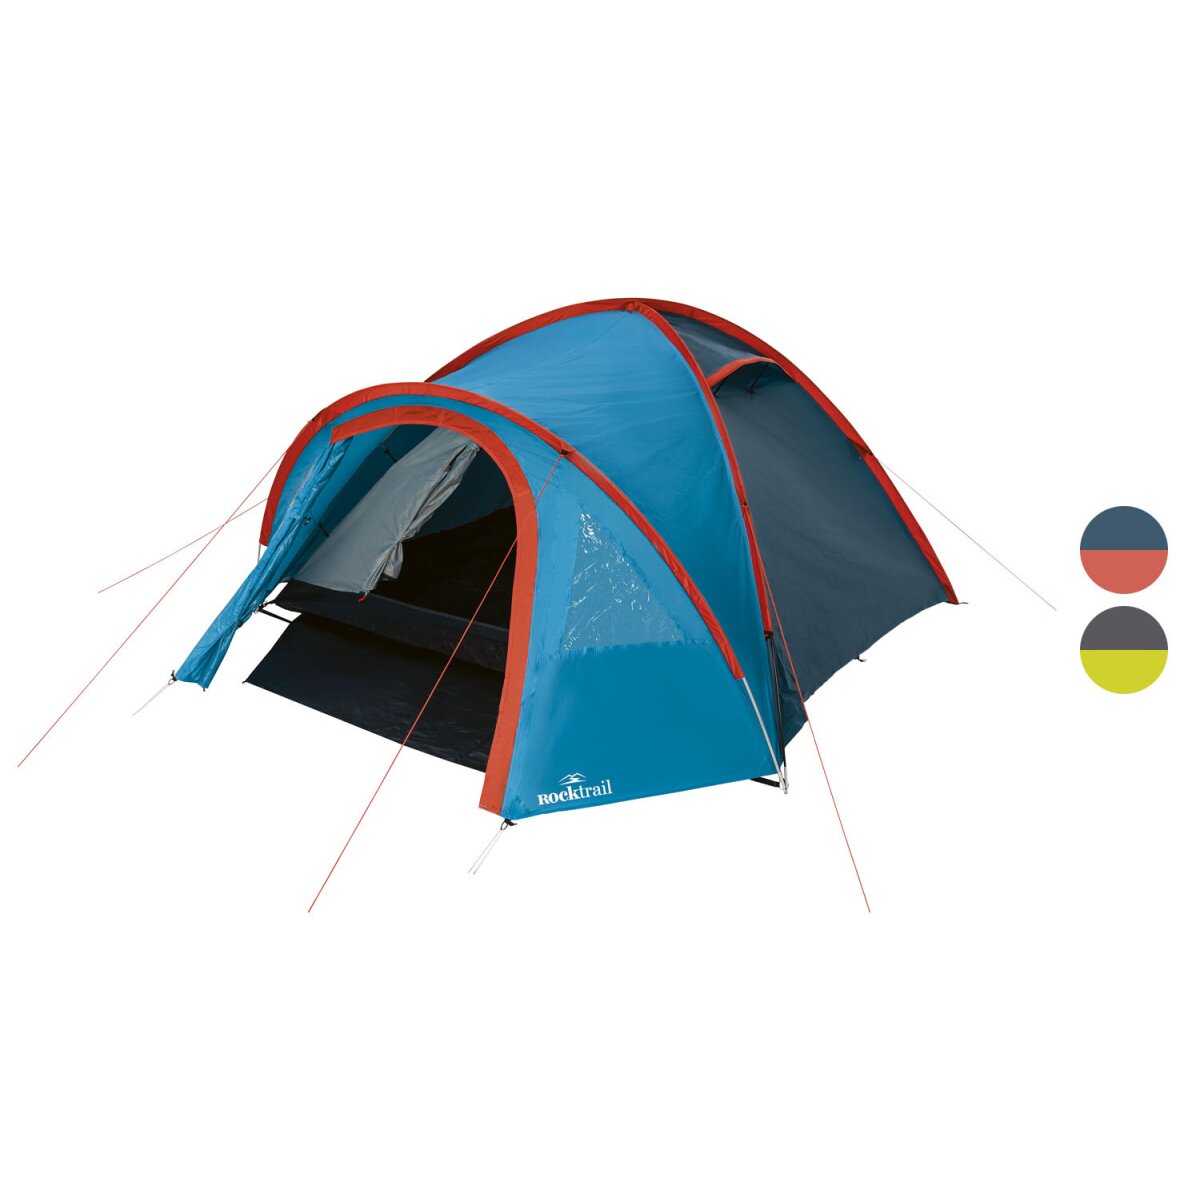 Rocktrail Campingzelt für 4 Personen, mit Doppeldach - B-Ware, 34,99 €